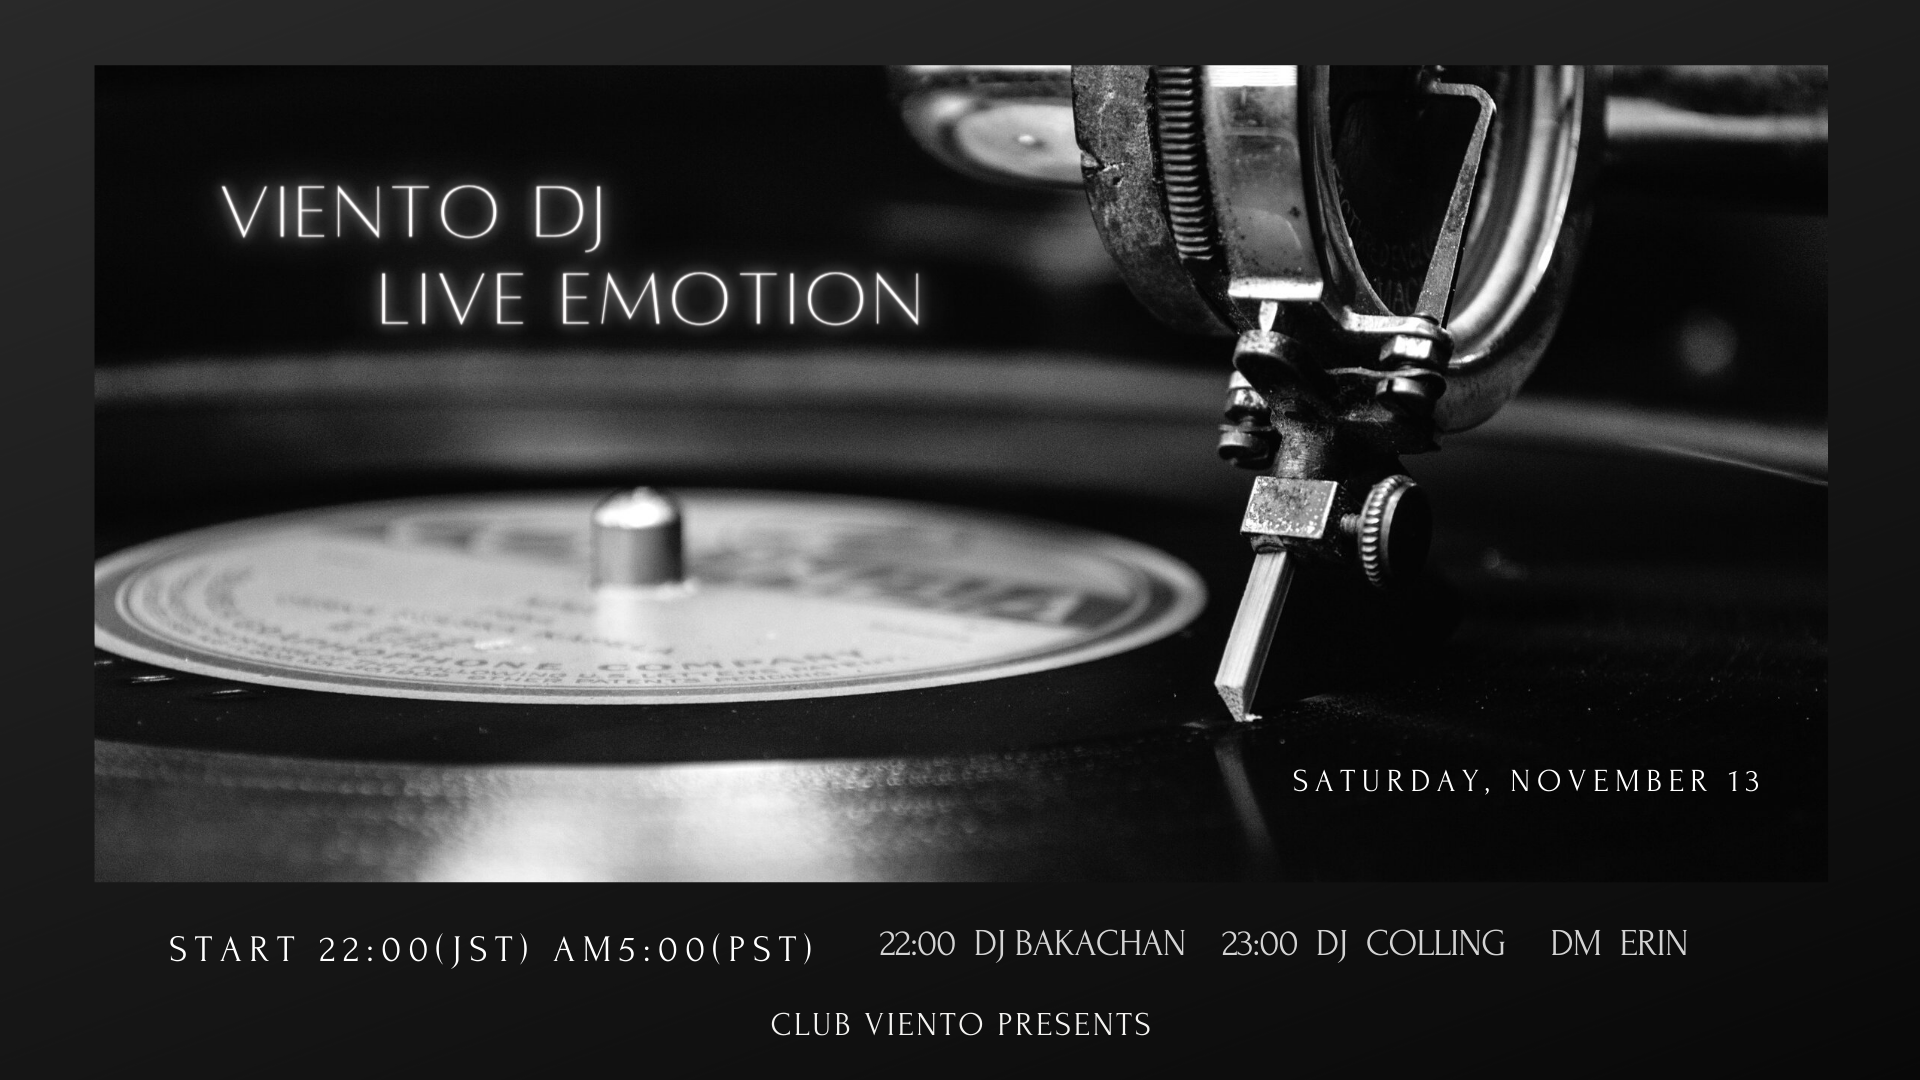 Viento DJ Live Emotion! DJ Colling & DJ Bakachan